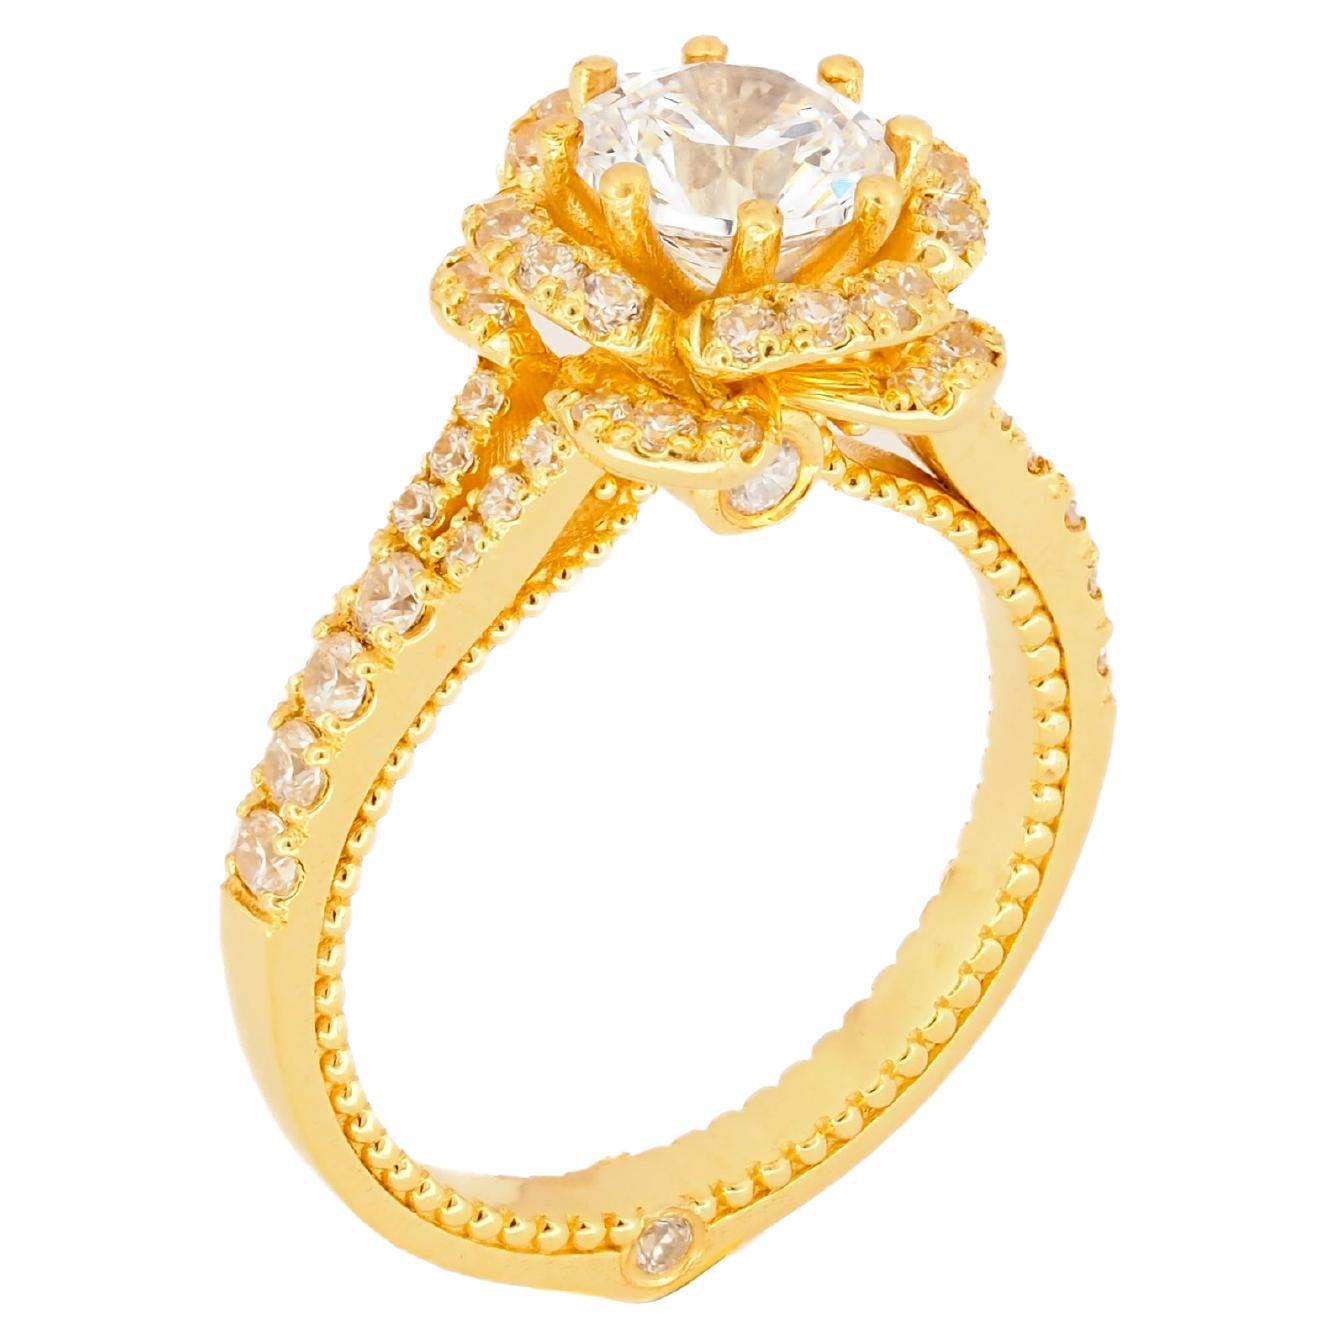 Moissanite 14k gold engagement ring. For Sale